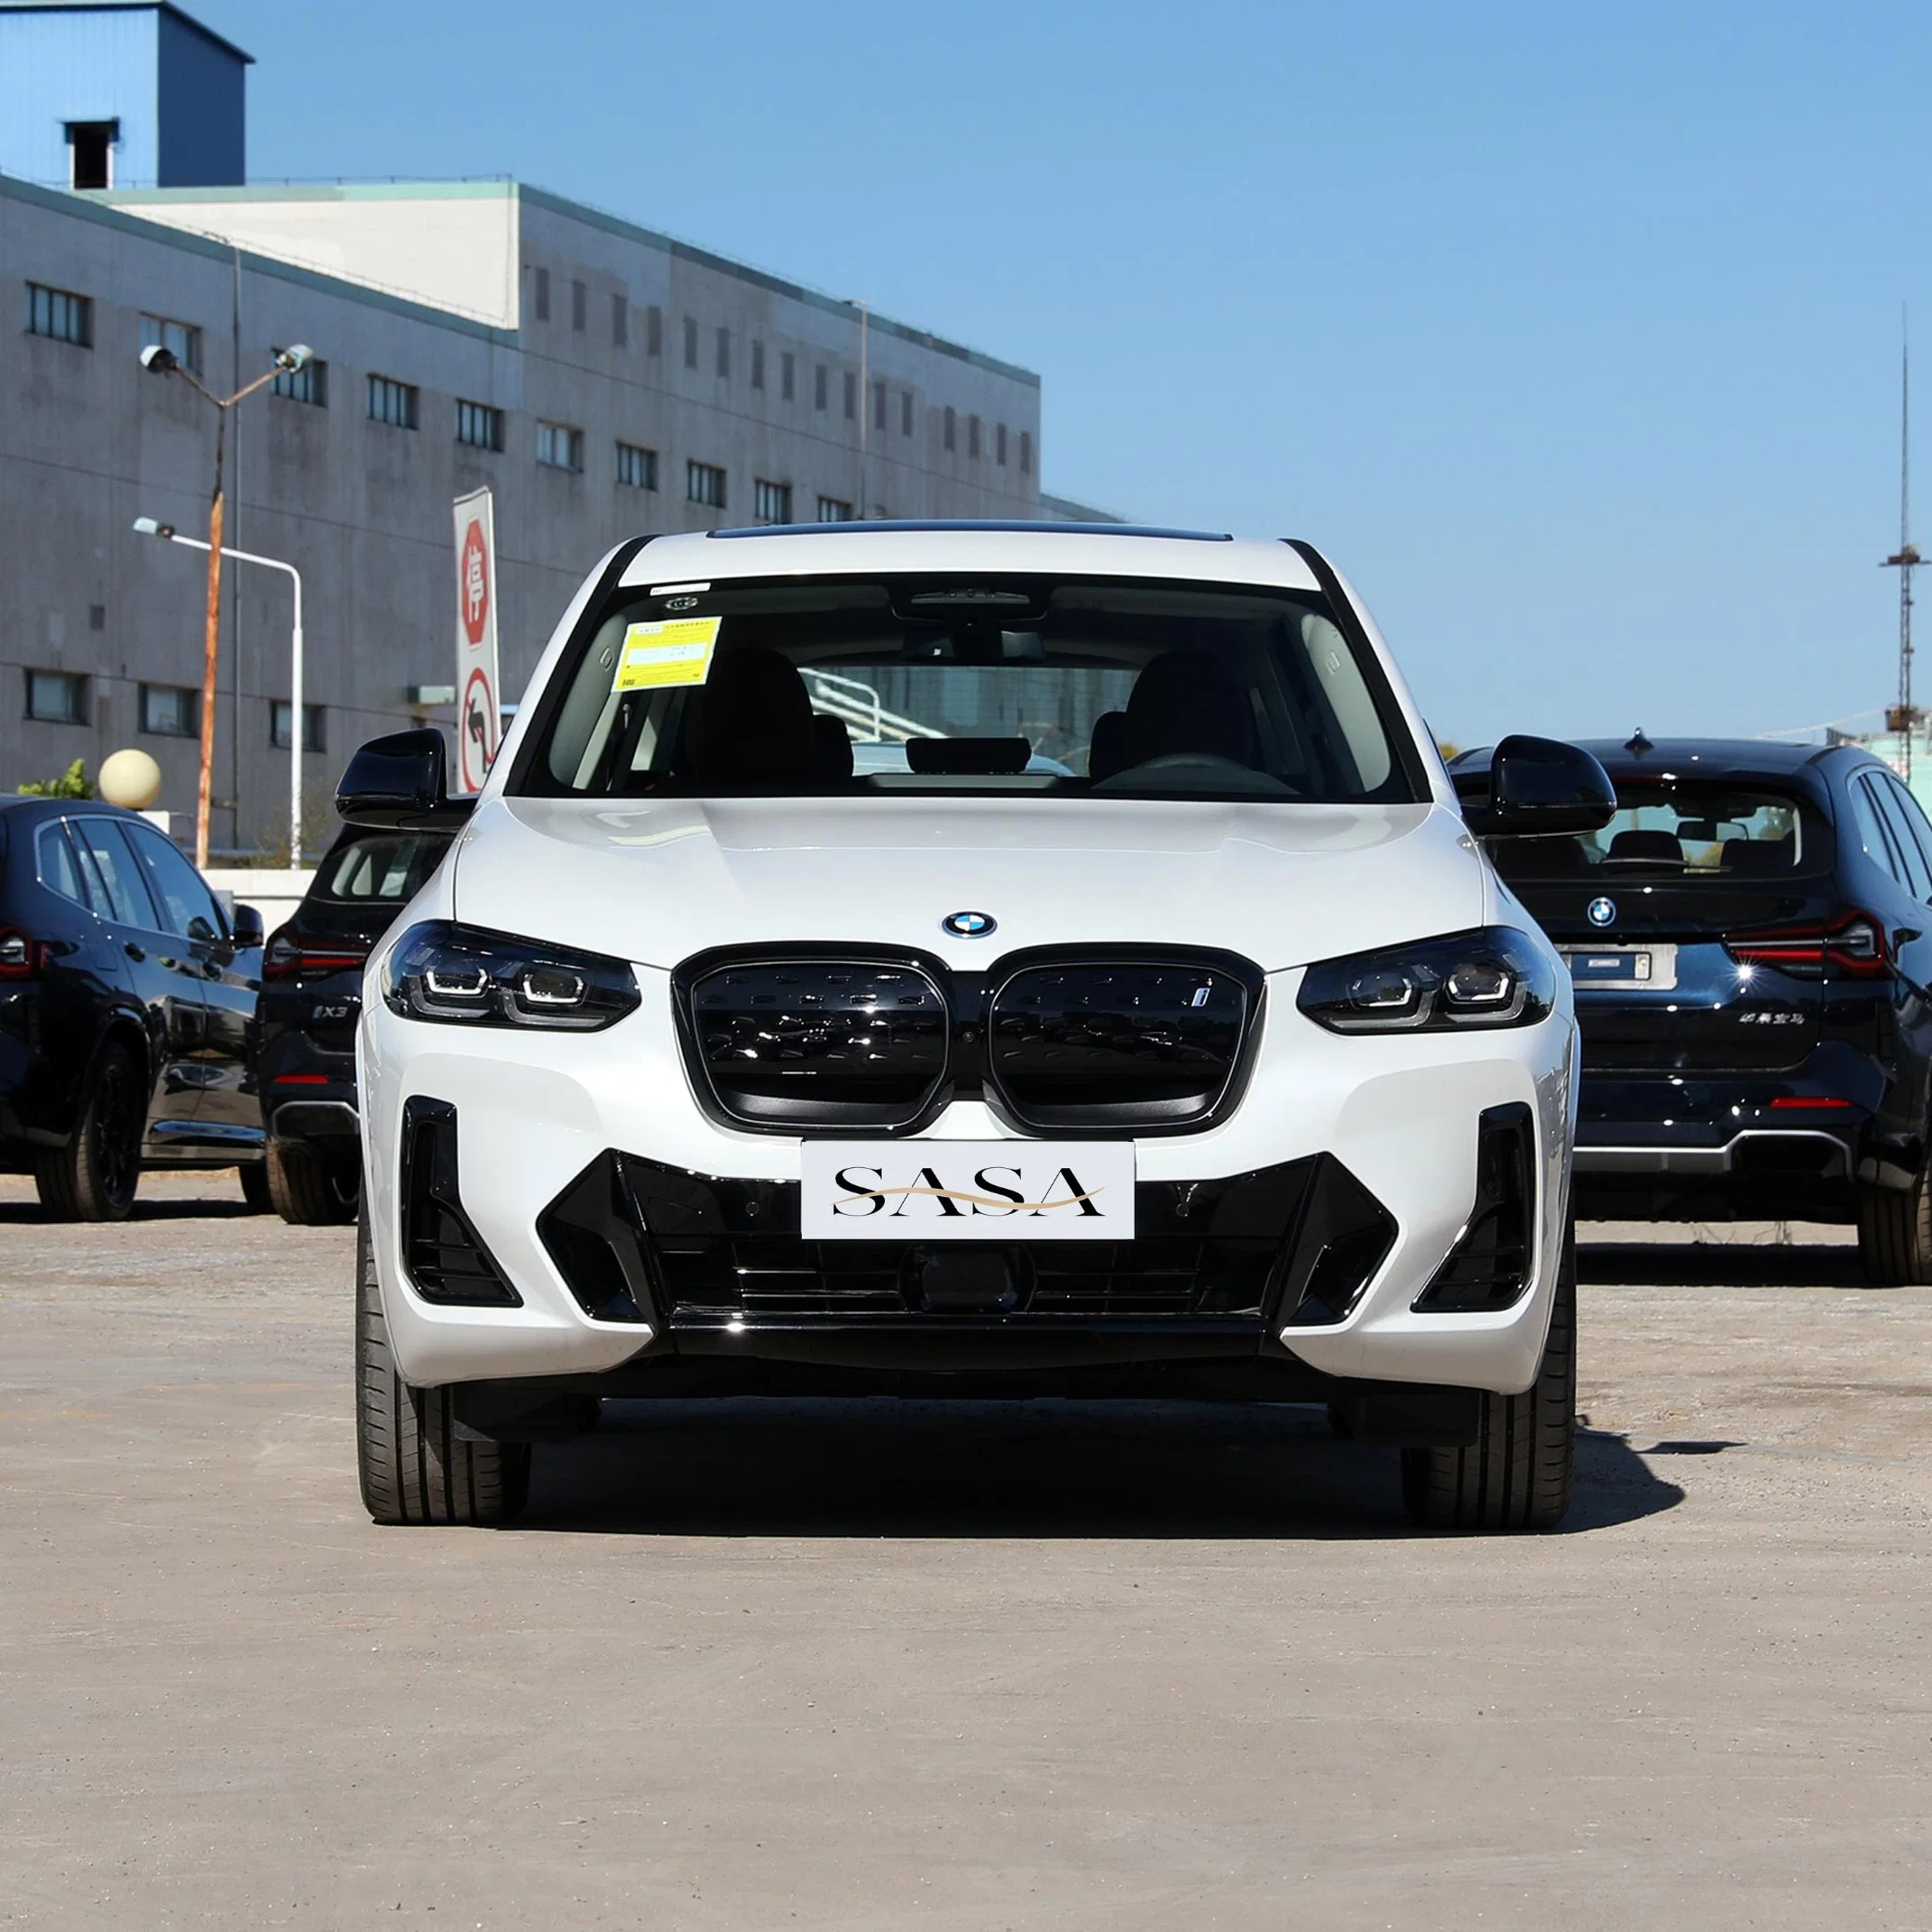 Carro usado BMW IX3 novos veículos de energia EV novo Electric Carro segunda mão Smart quatro rodas chinês carro elétrico vender